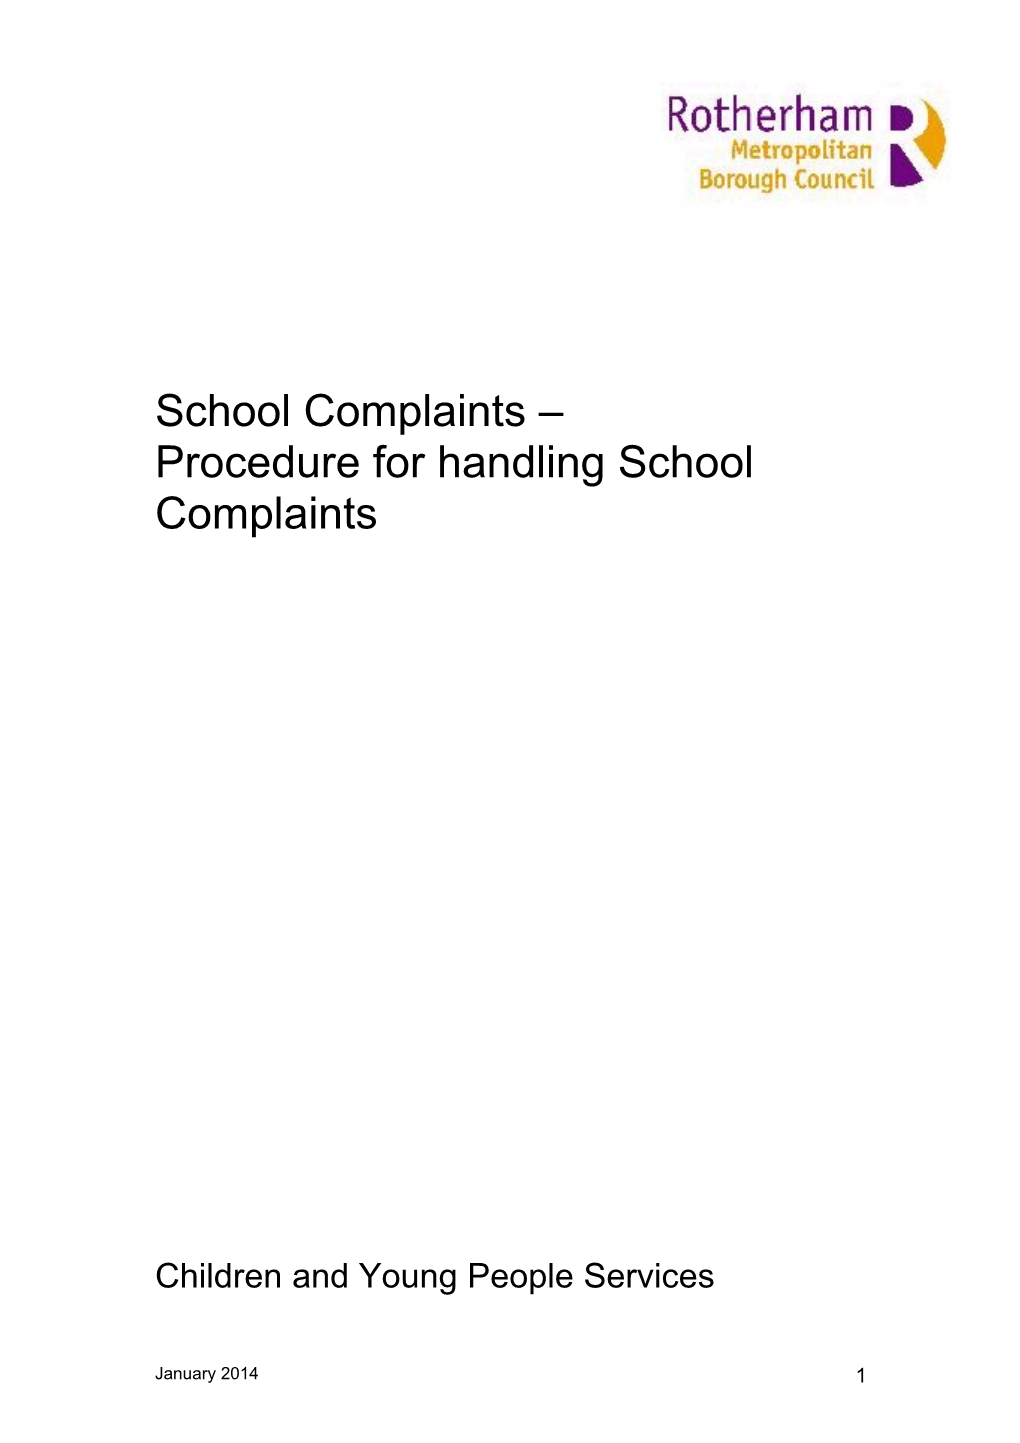 Procedure for Handling School Complaints